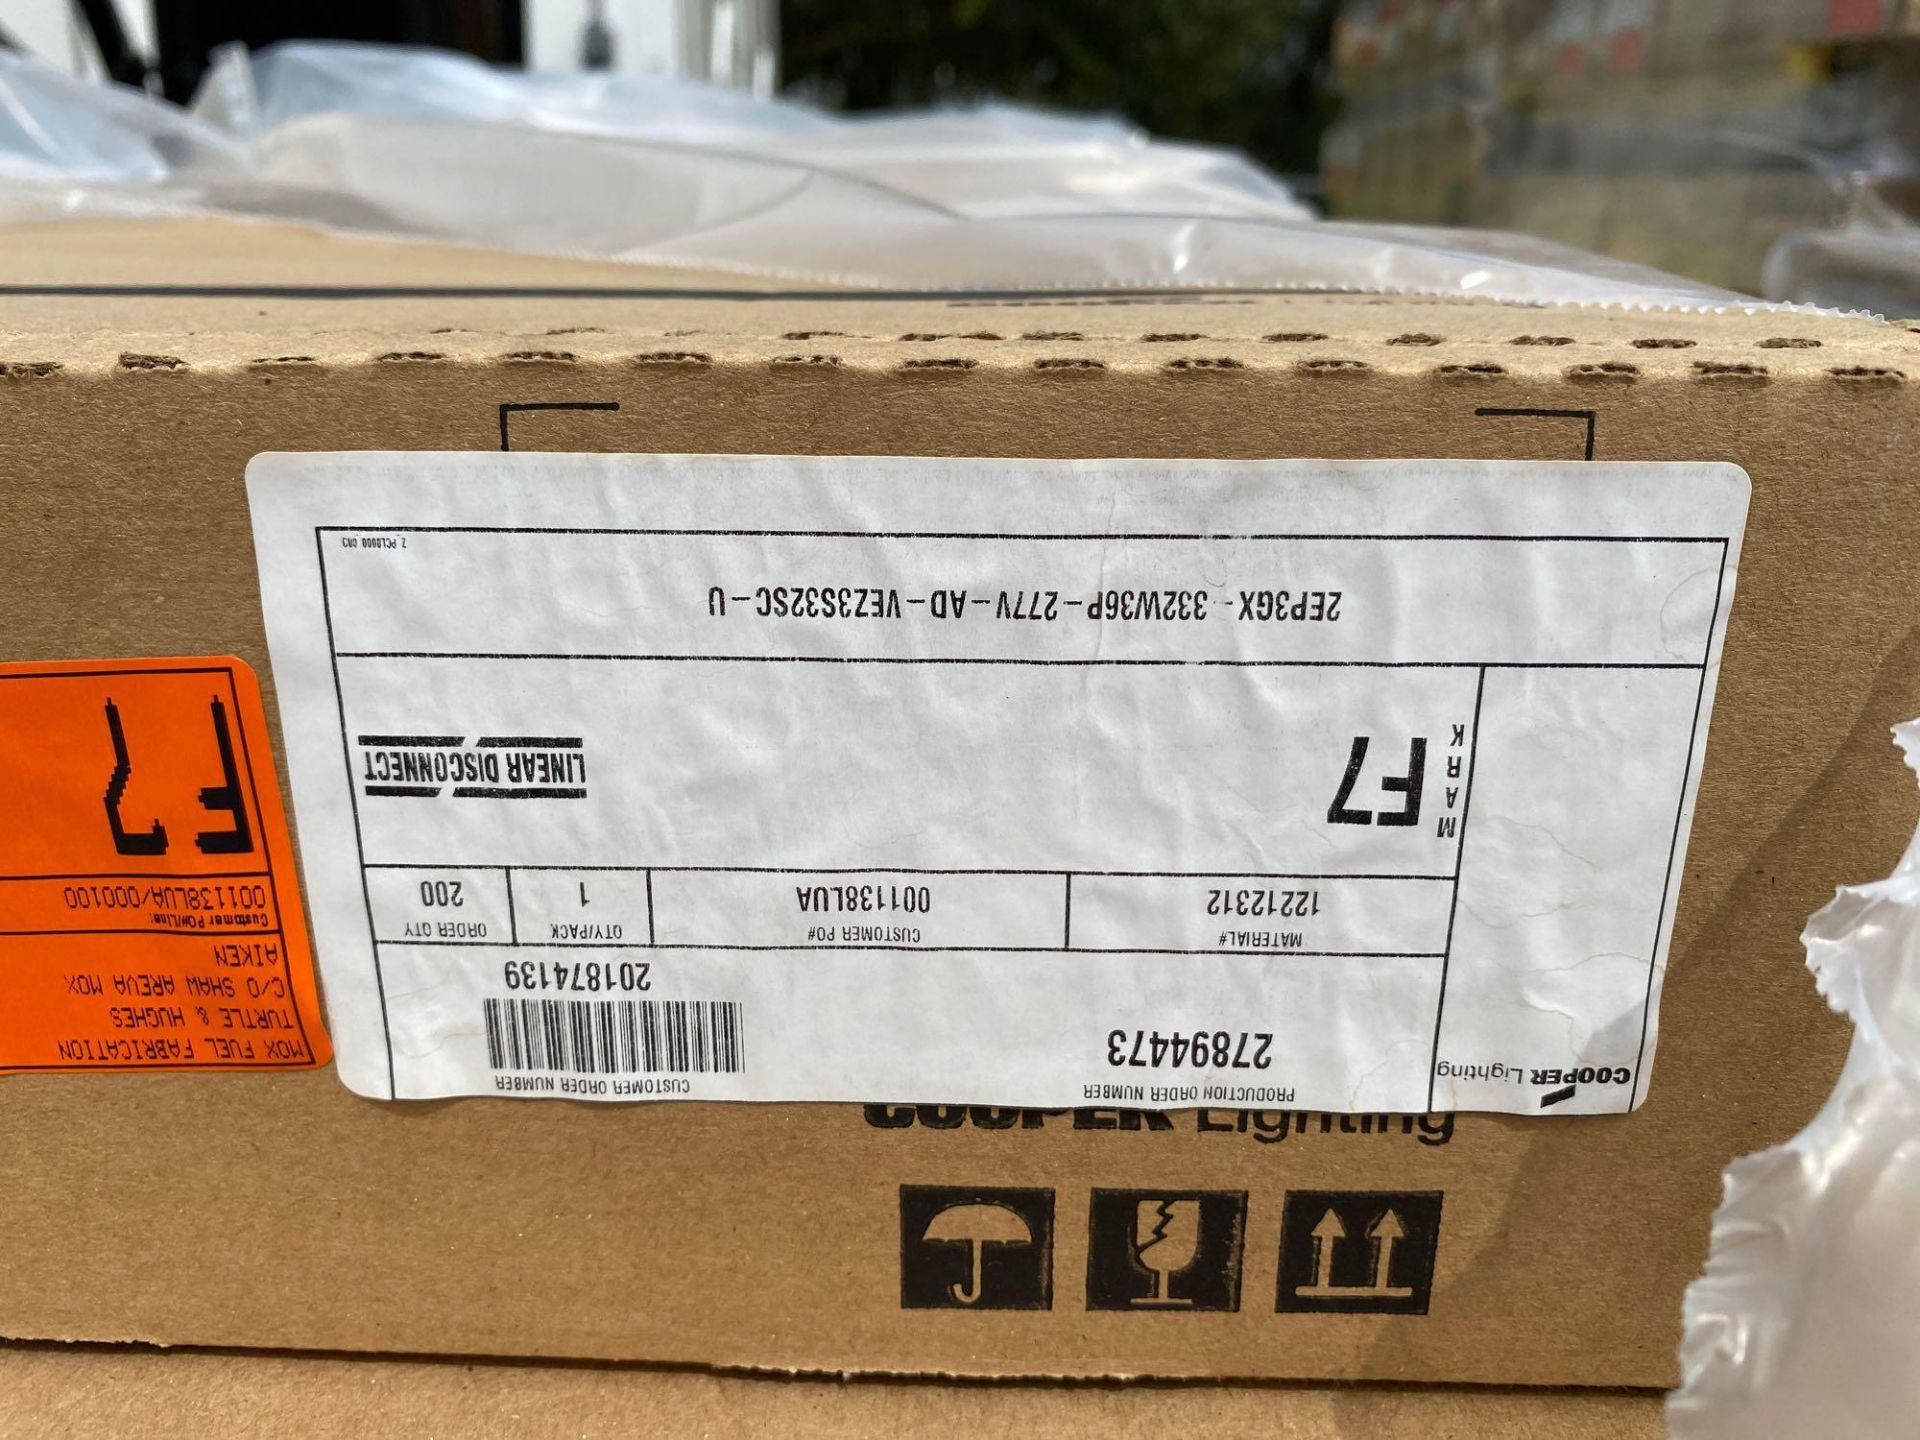 15 BOXES OF COOPER LIGHTING METALUX FLUORESCENT FIXTURES, UNUSED IN BOX - Image 3 of 4